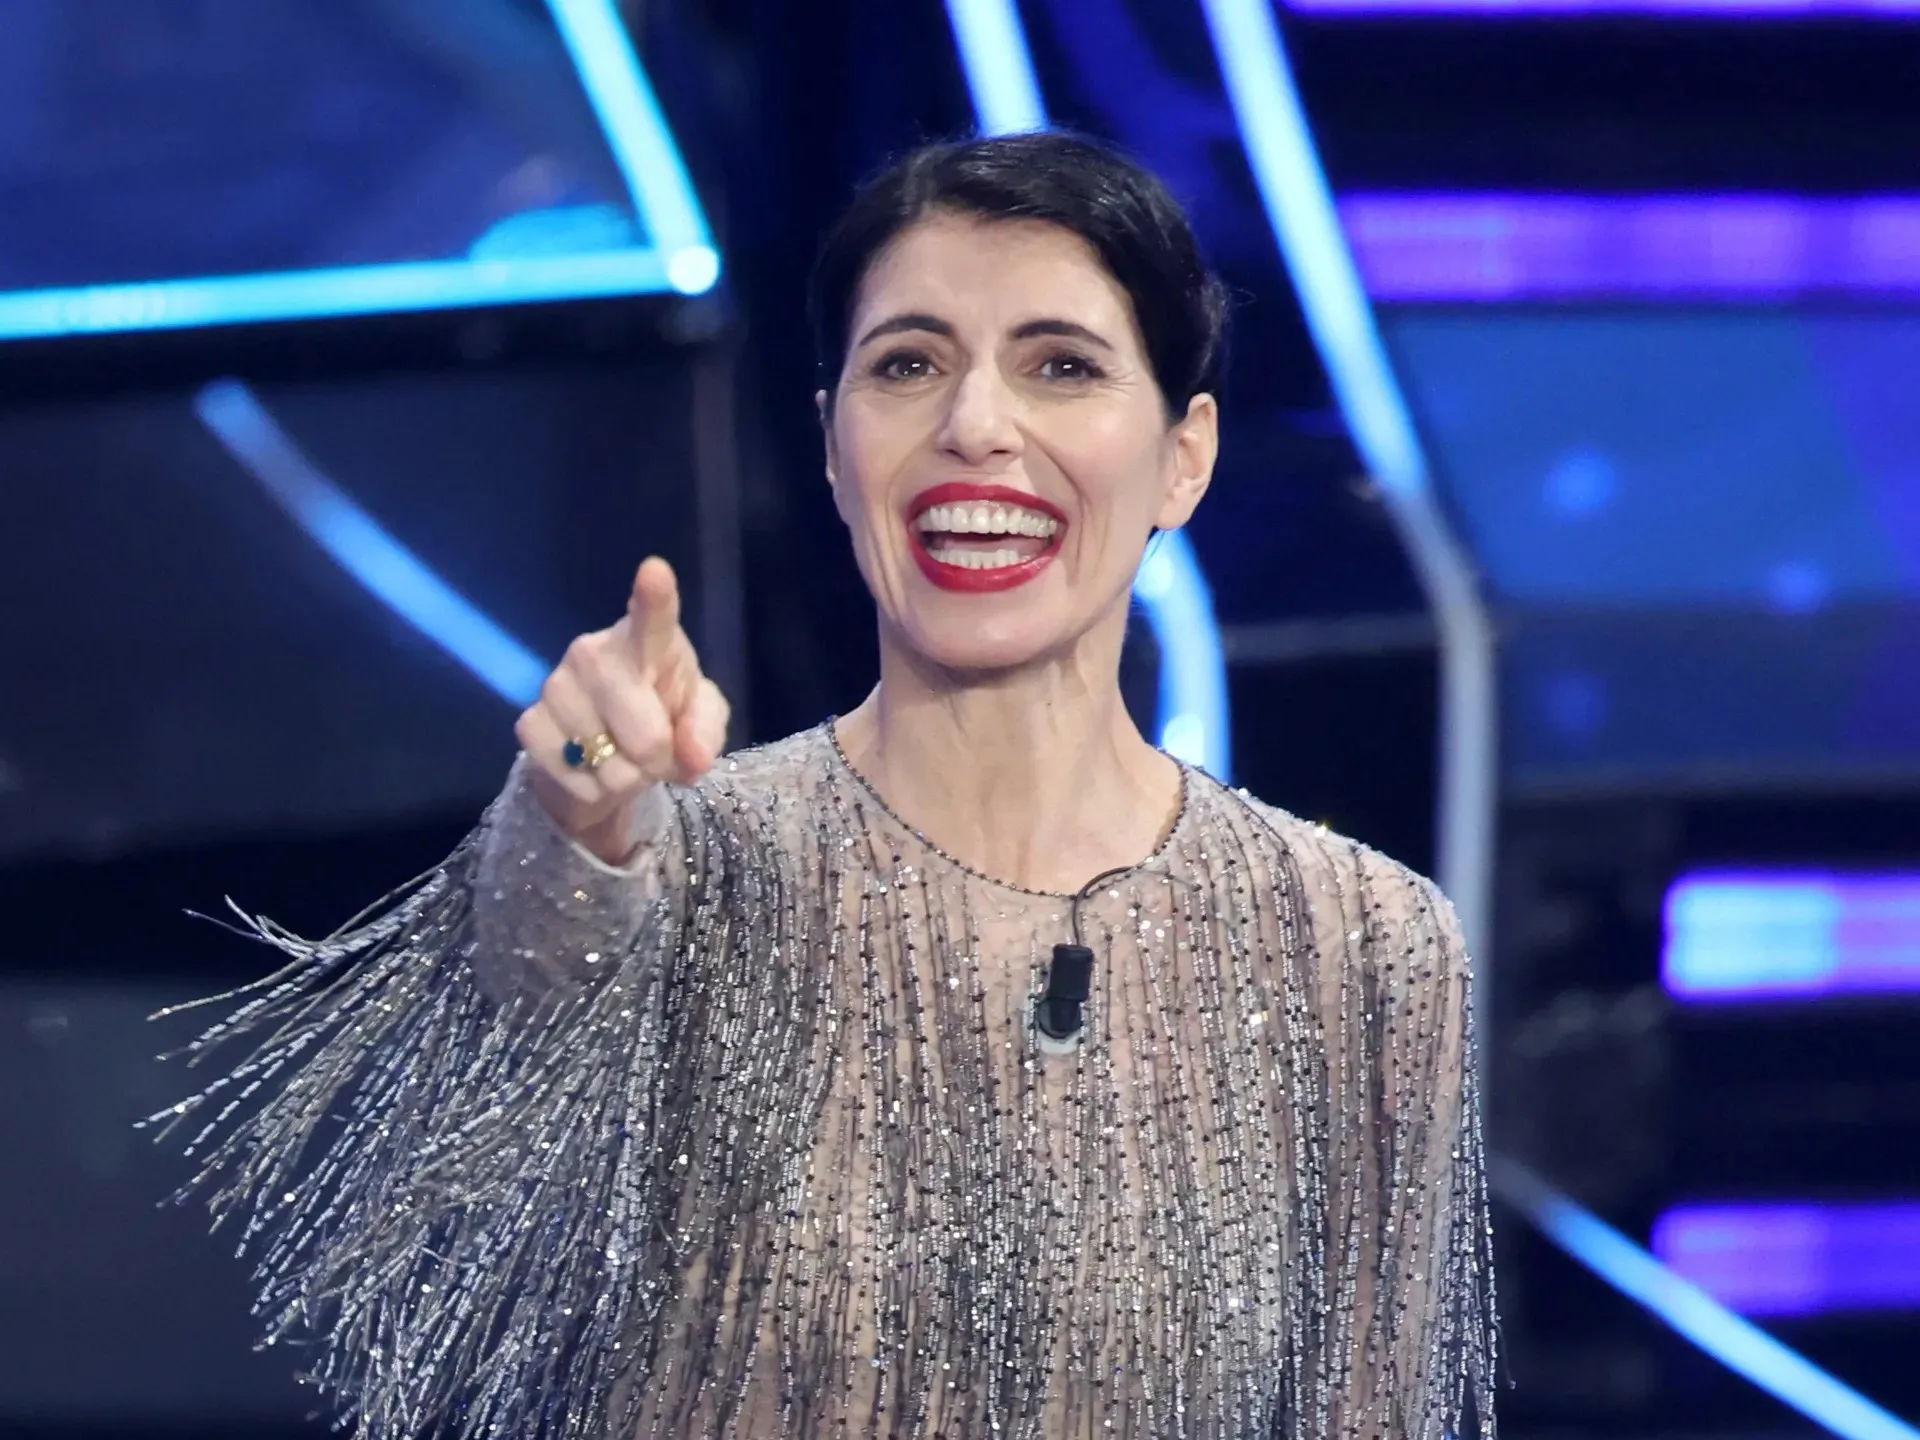 Giorgia condurrà “X Factor”